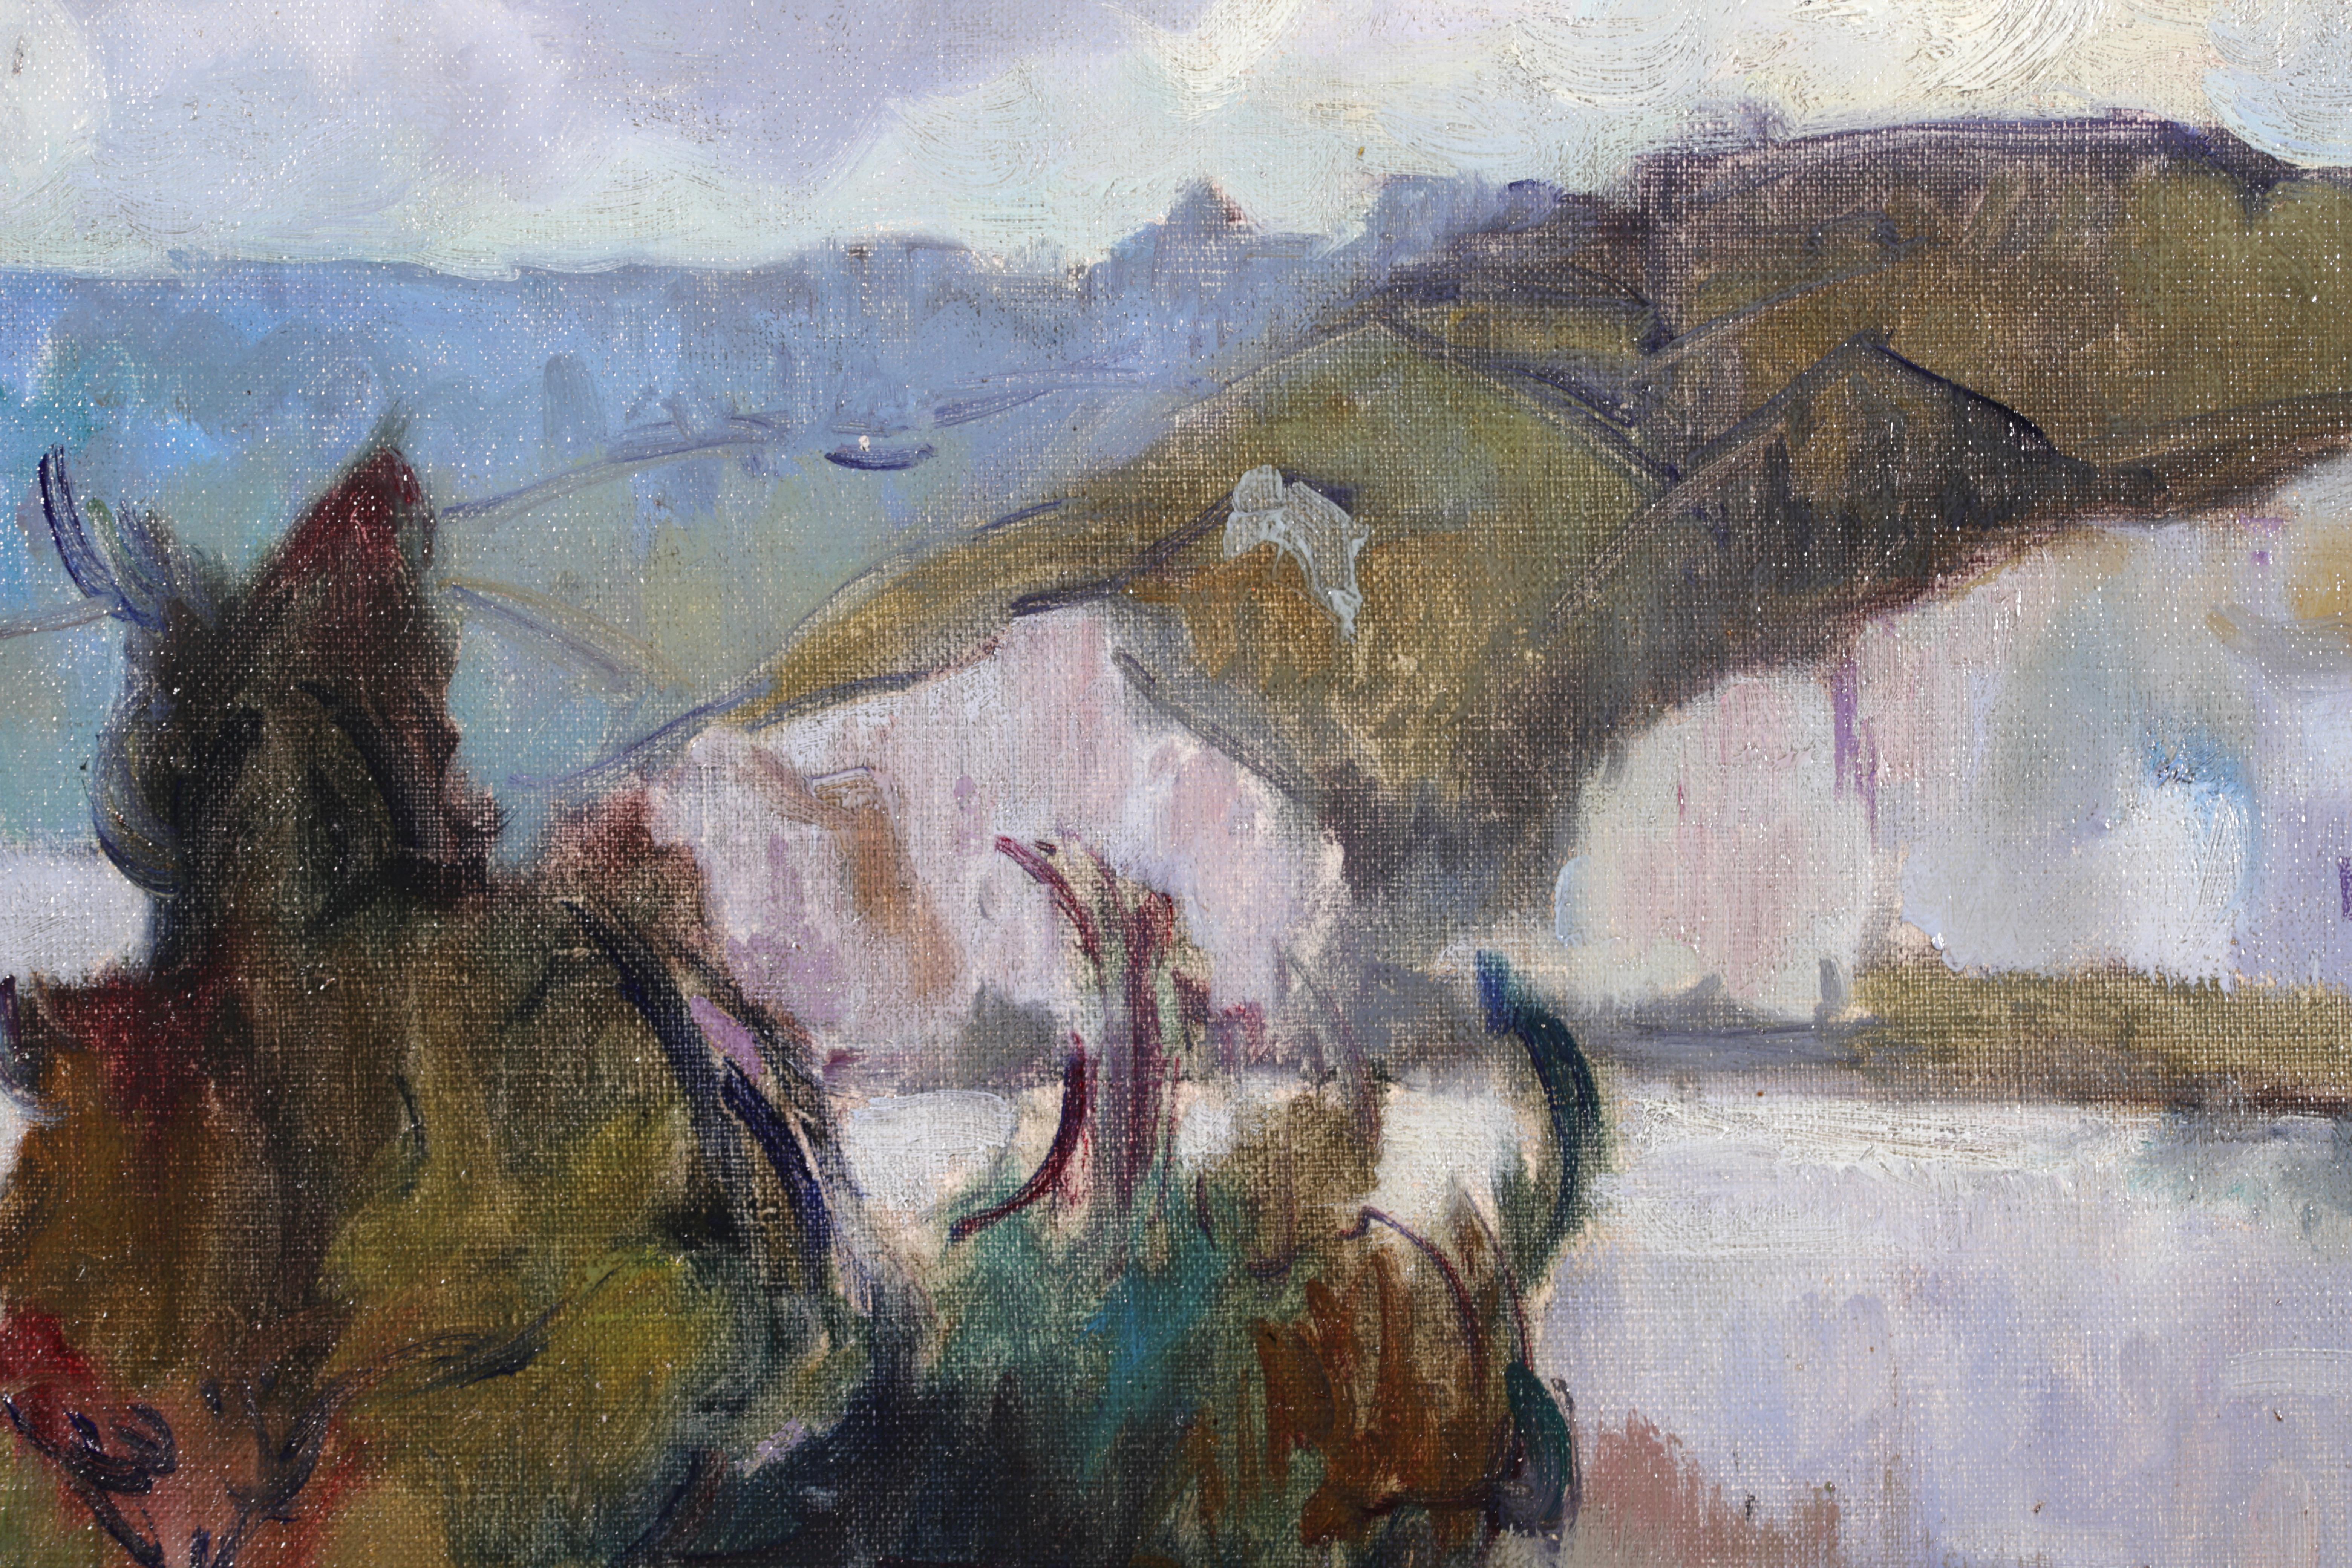 La Seine - Post Impressionist Fauvist Oil, River Landscape by Robert Pinchon 2